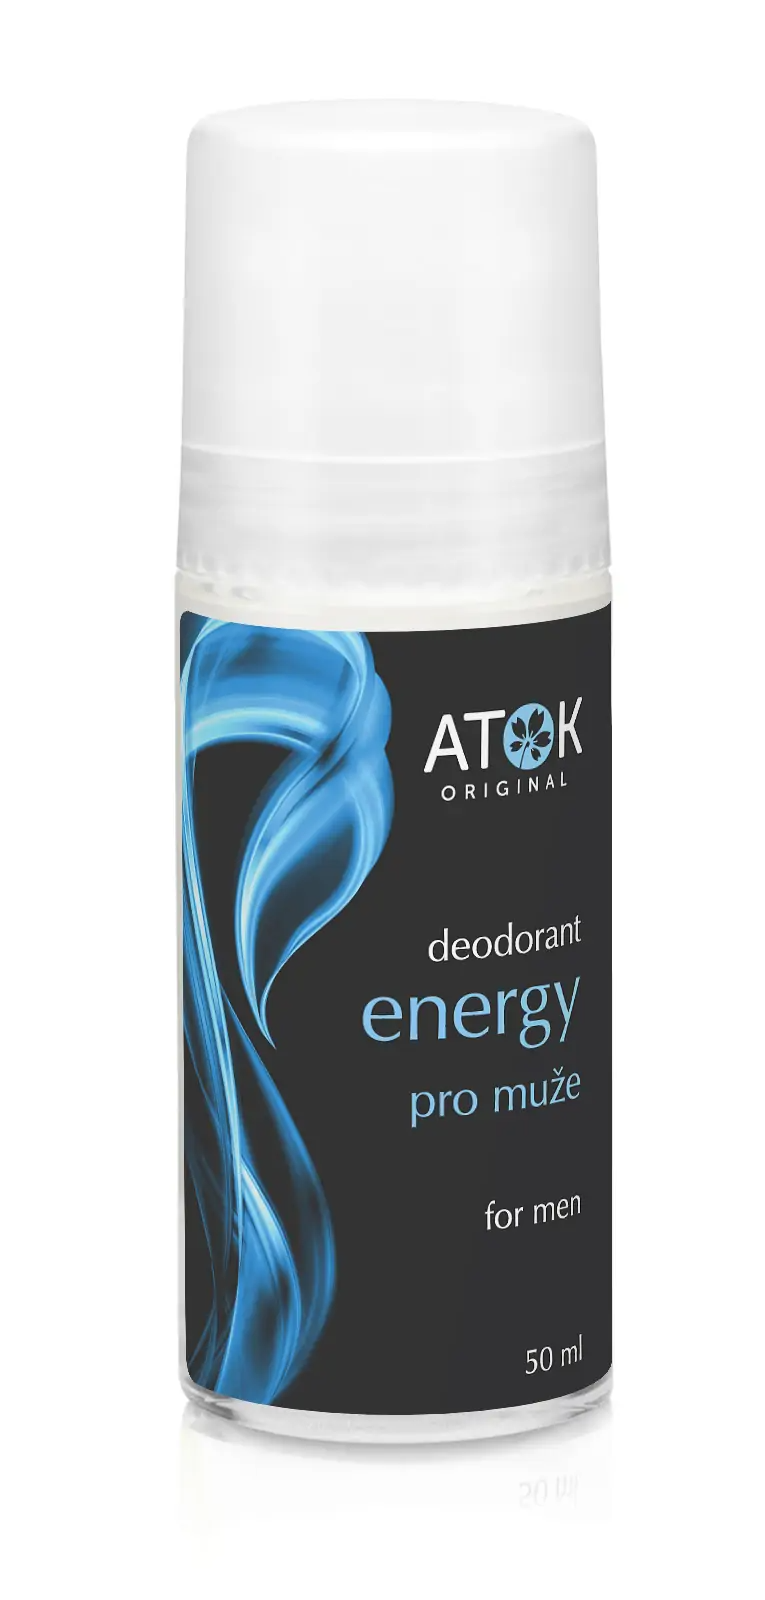 Prírodný deodorant Energy Original Atok Obsah: 50 ml